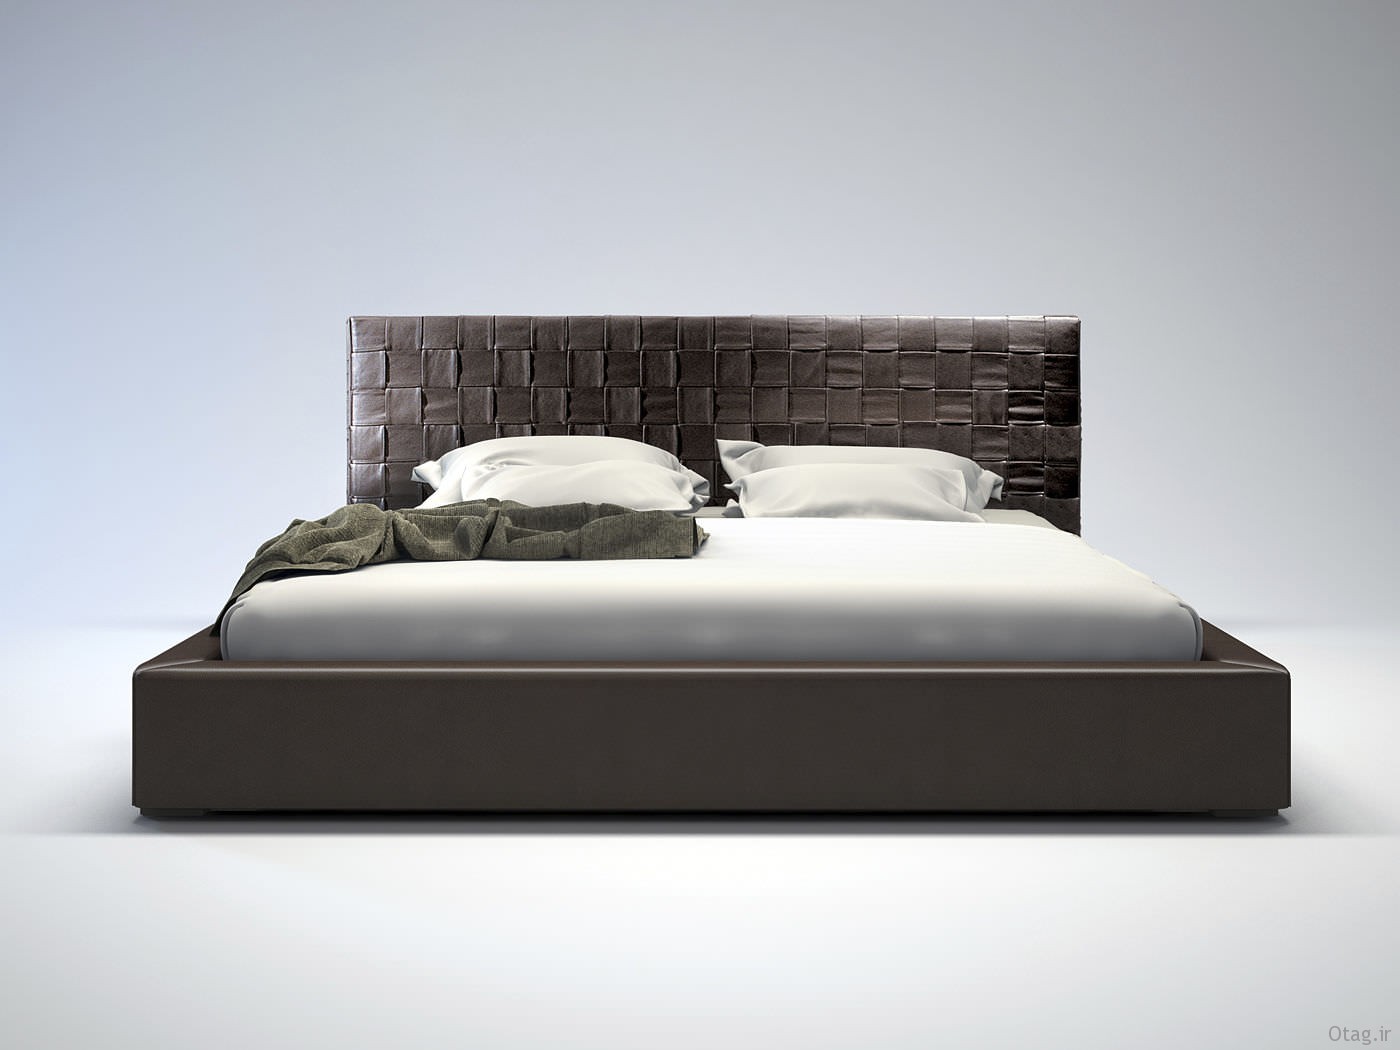 عکس اتاق خواب و مدل تخت دو نفره شیک و زیبا / تصاویر تختخواب